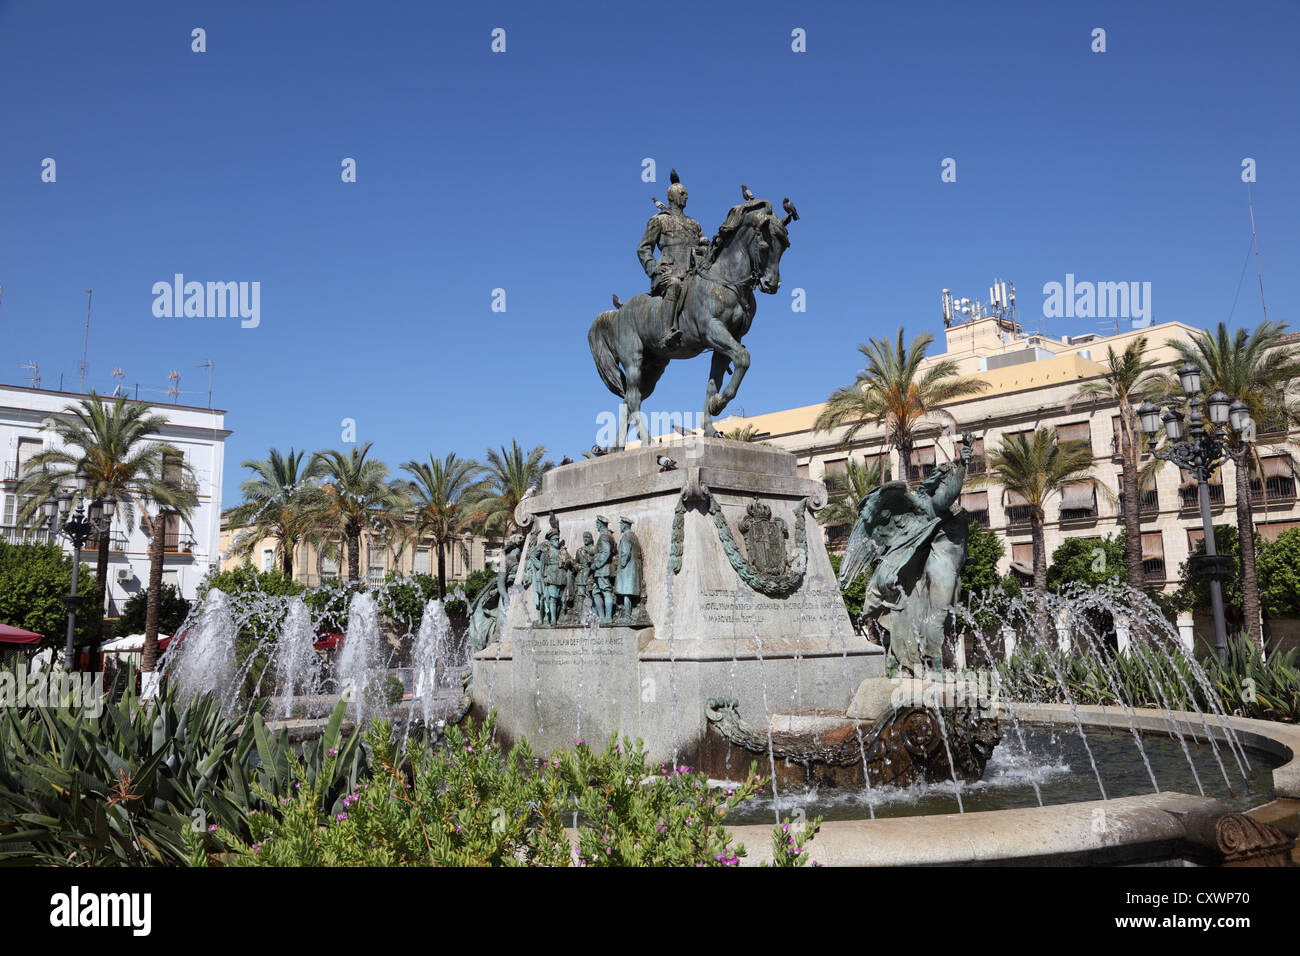 Statue d'une fontaine à Jerez de la Frontera, Andalousie Espagne Banque D'Images